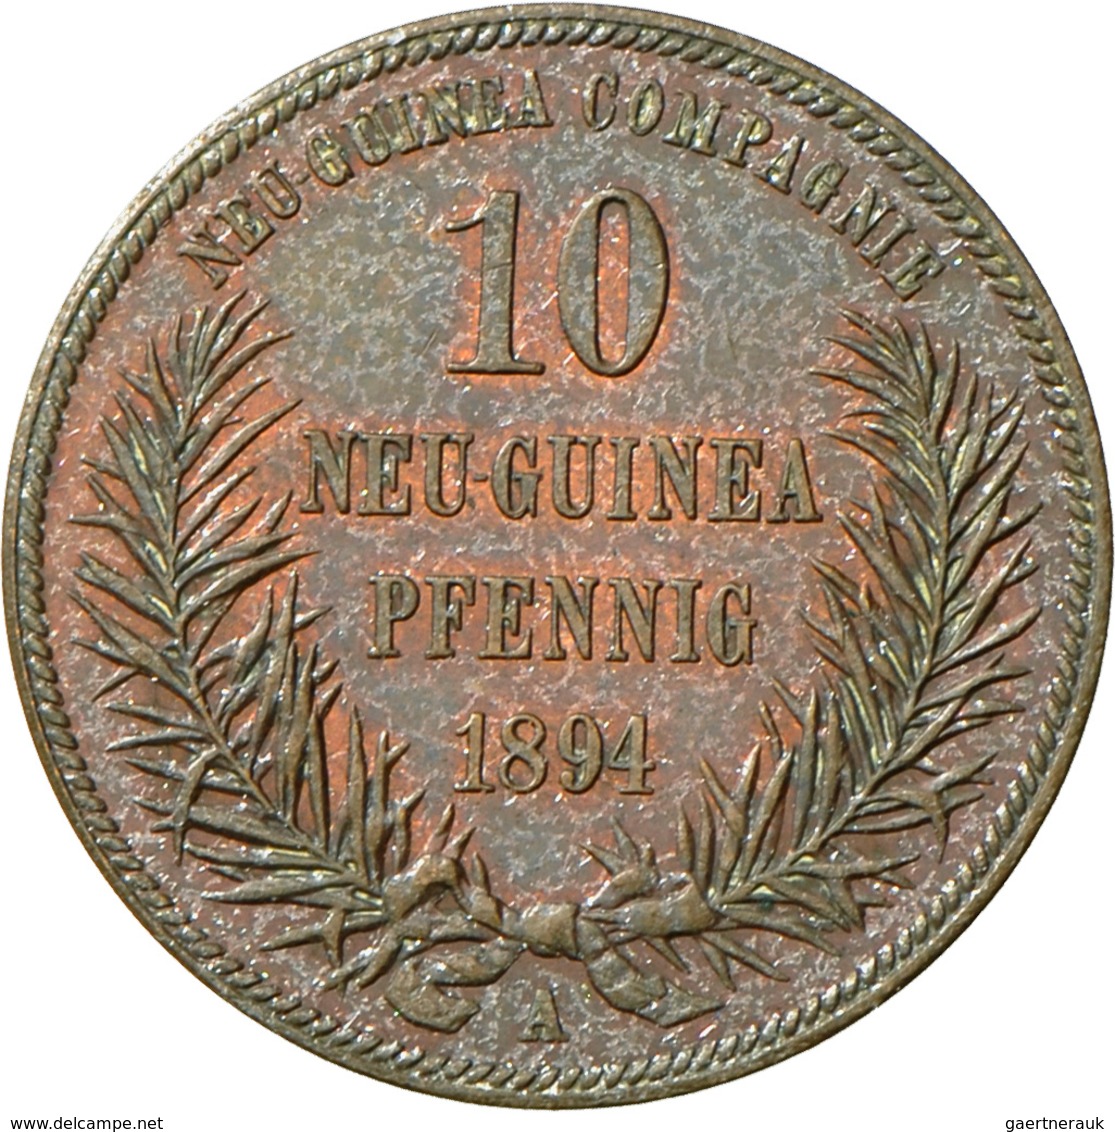 Deutsch-Neuguinea: 10 Neu-Guinea Pfennig 1894 A, Paradiesvogel, Jaeger 703, AKS 961, Schöne Kupferpa - German New Guinea